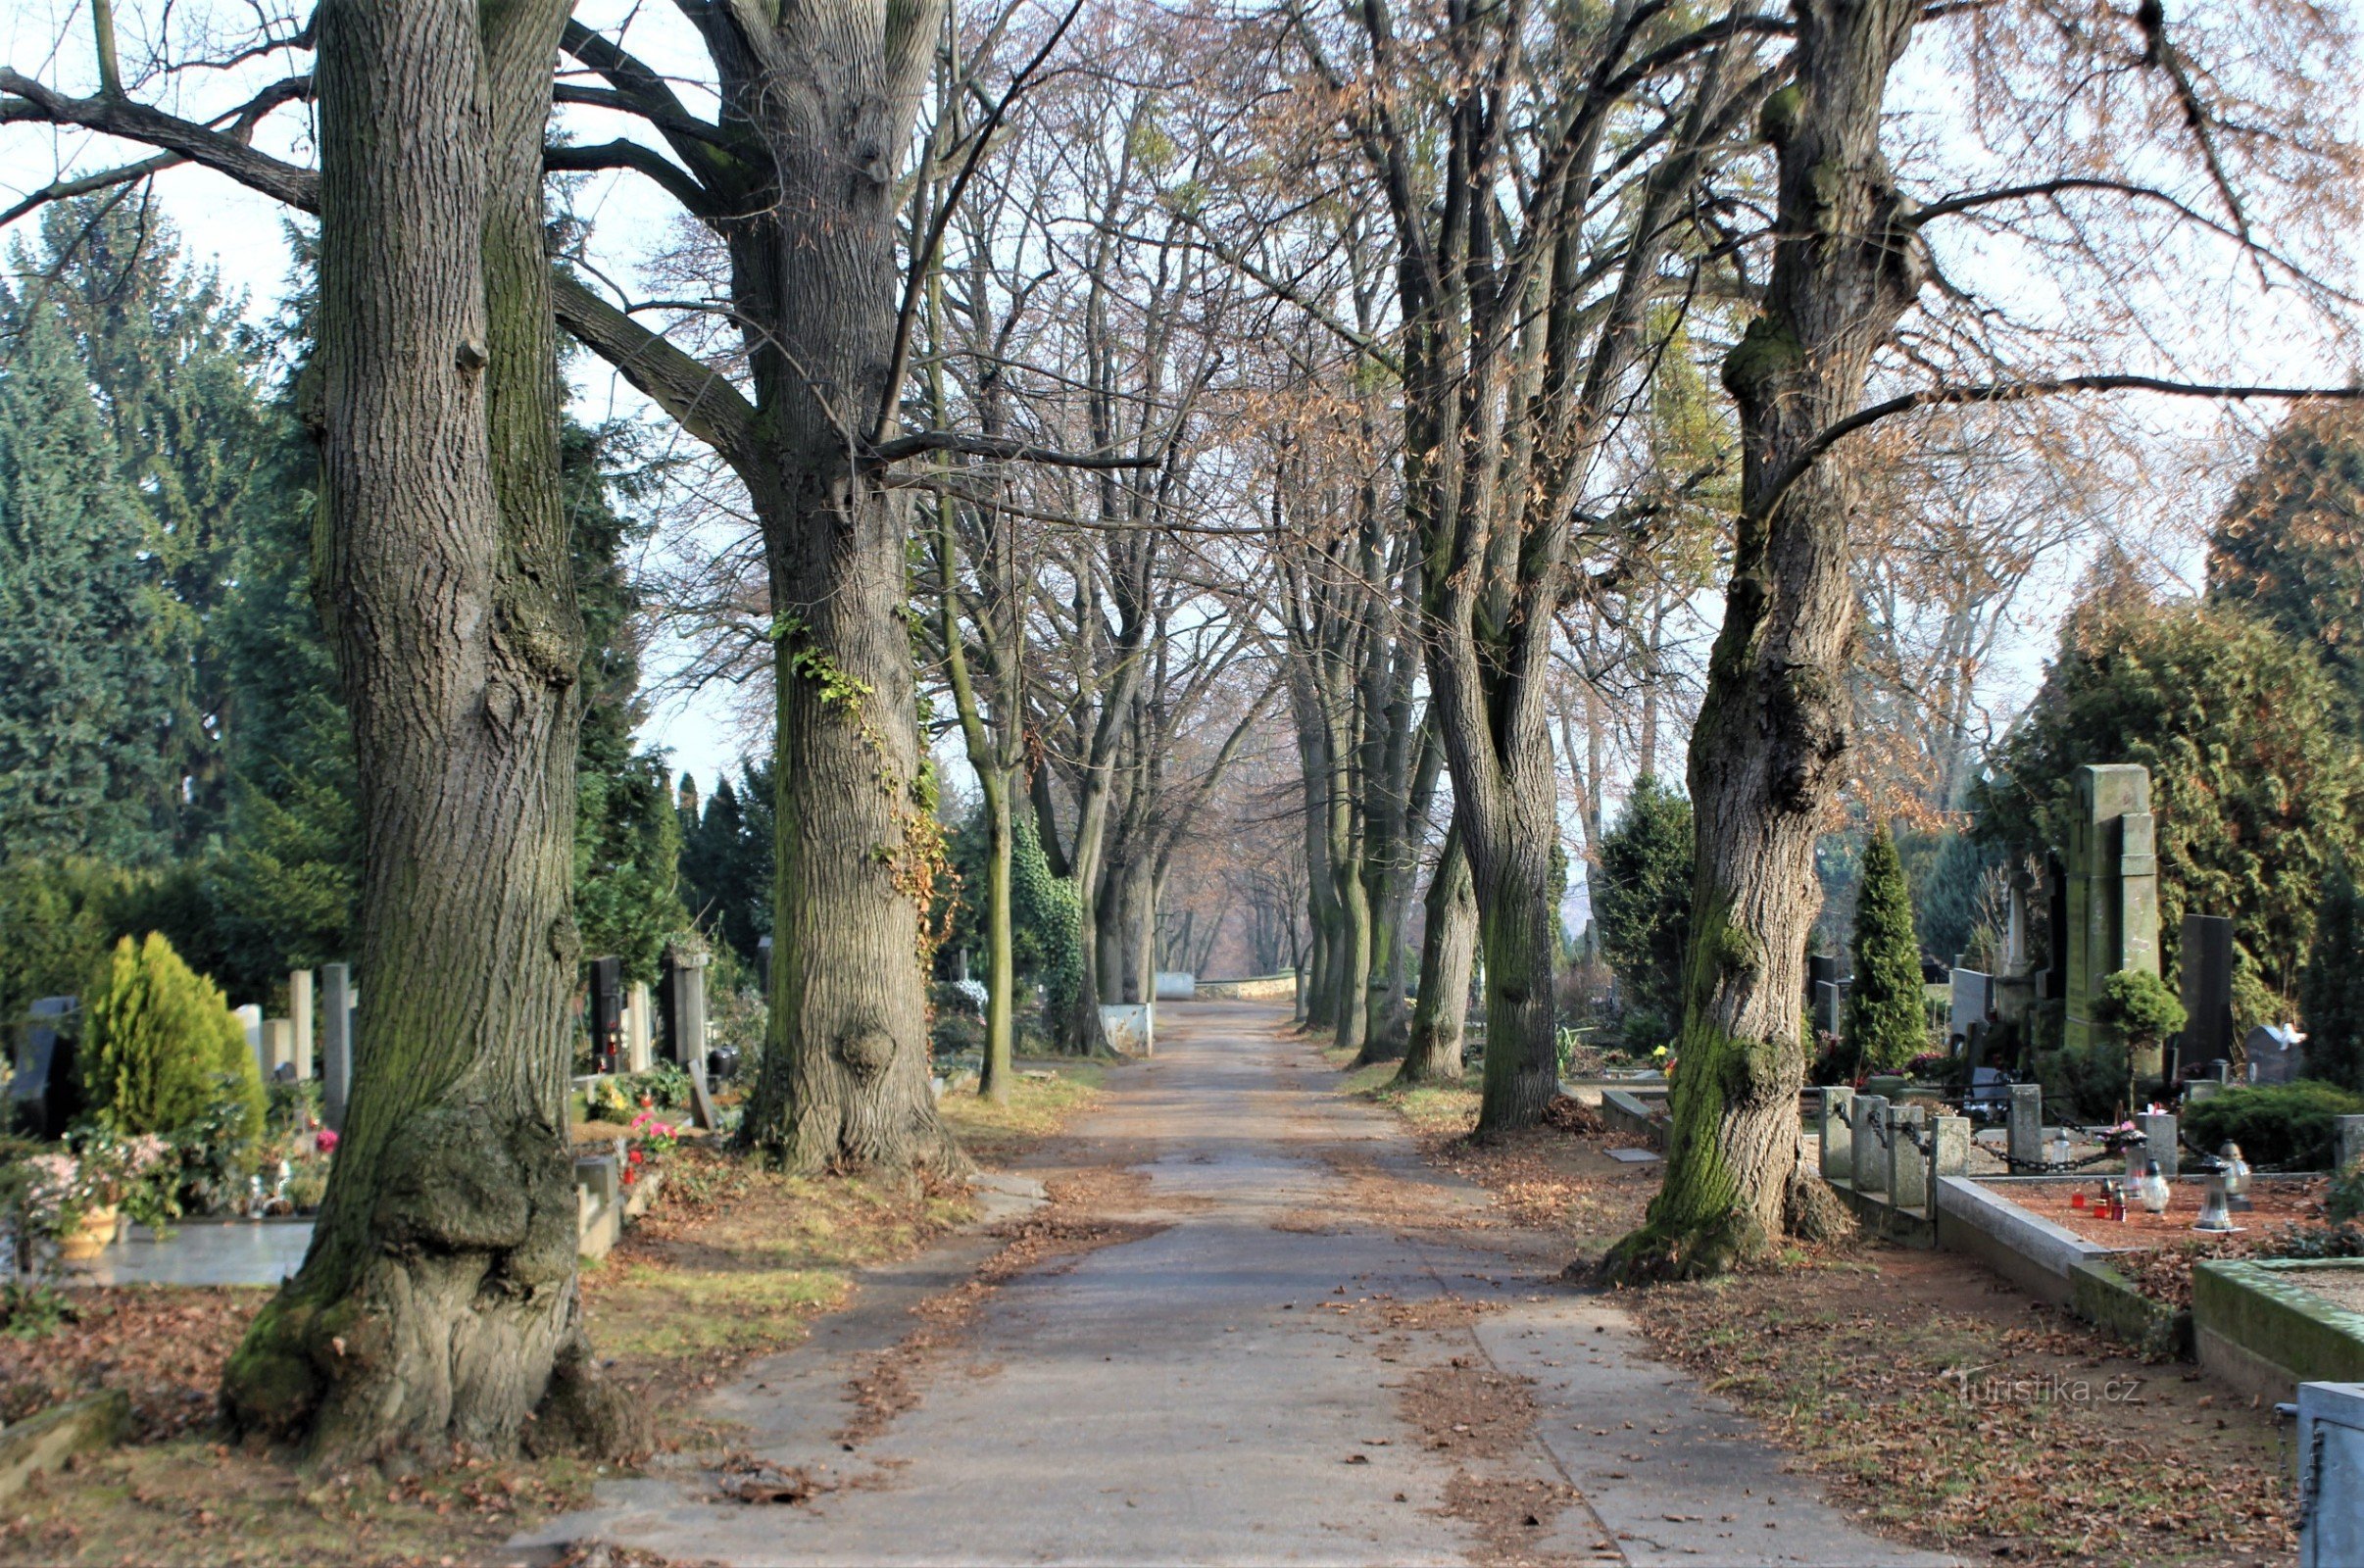 Le cimetière est entrelacé avec un réseau d'avenues avec de la verdure mature